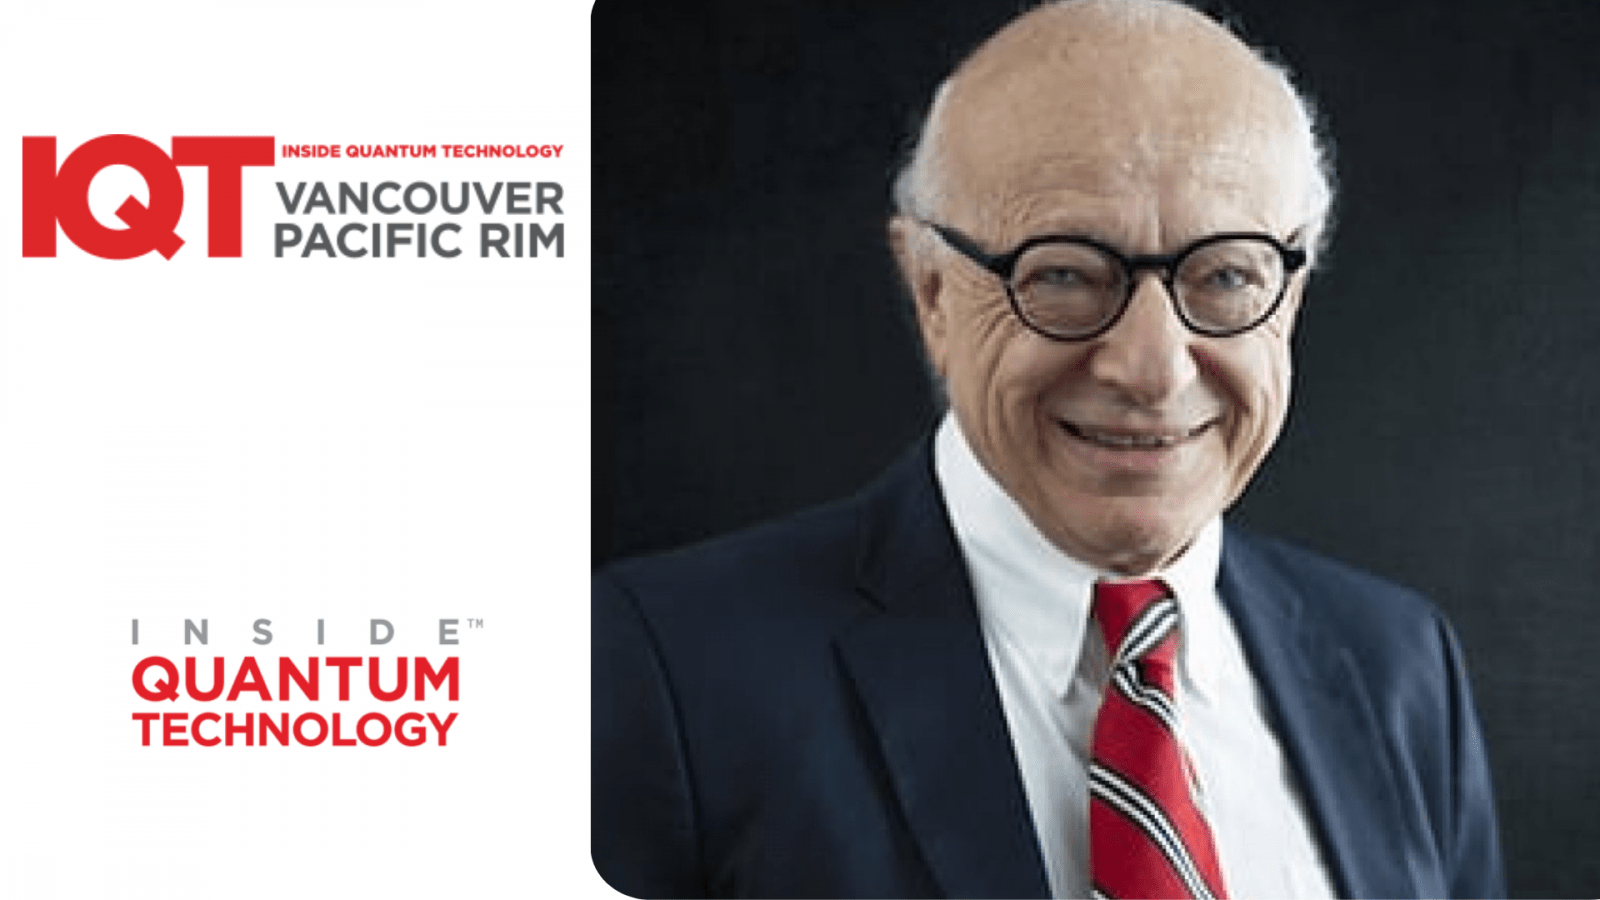 Лоуренс Гасман, співзасновник Inside Quantum Technology (IQT), виступить у 2024 році на конференції IQT Vancouver/Pacific Rim Conference